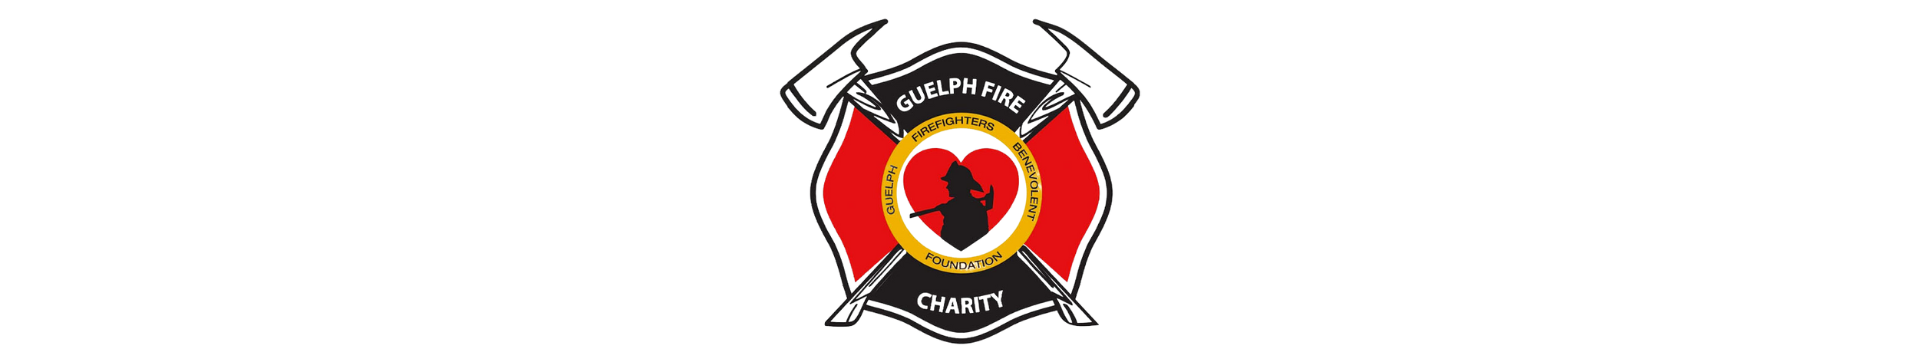 Guelph Fire Charity Logo